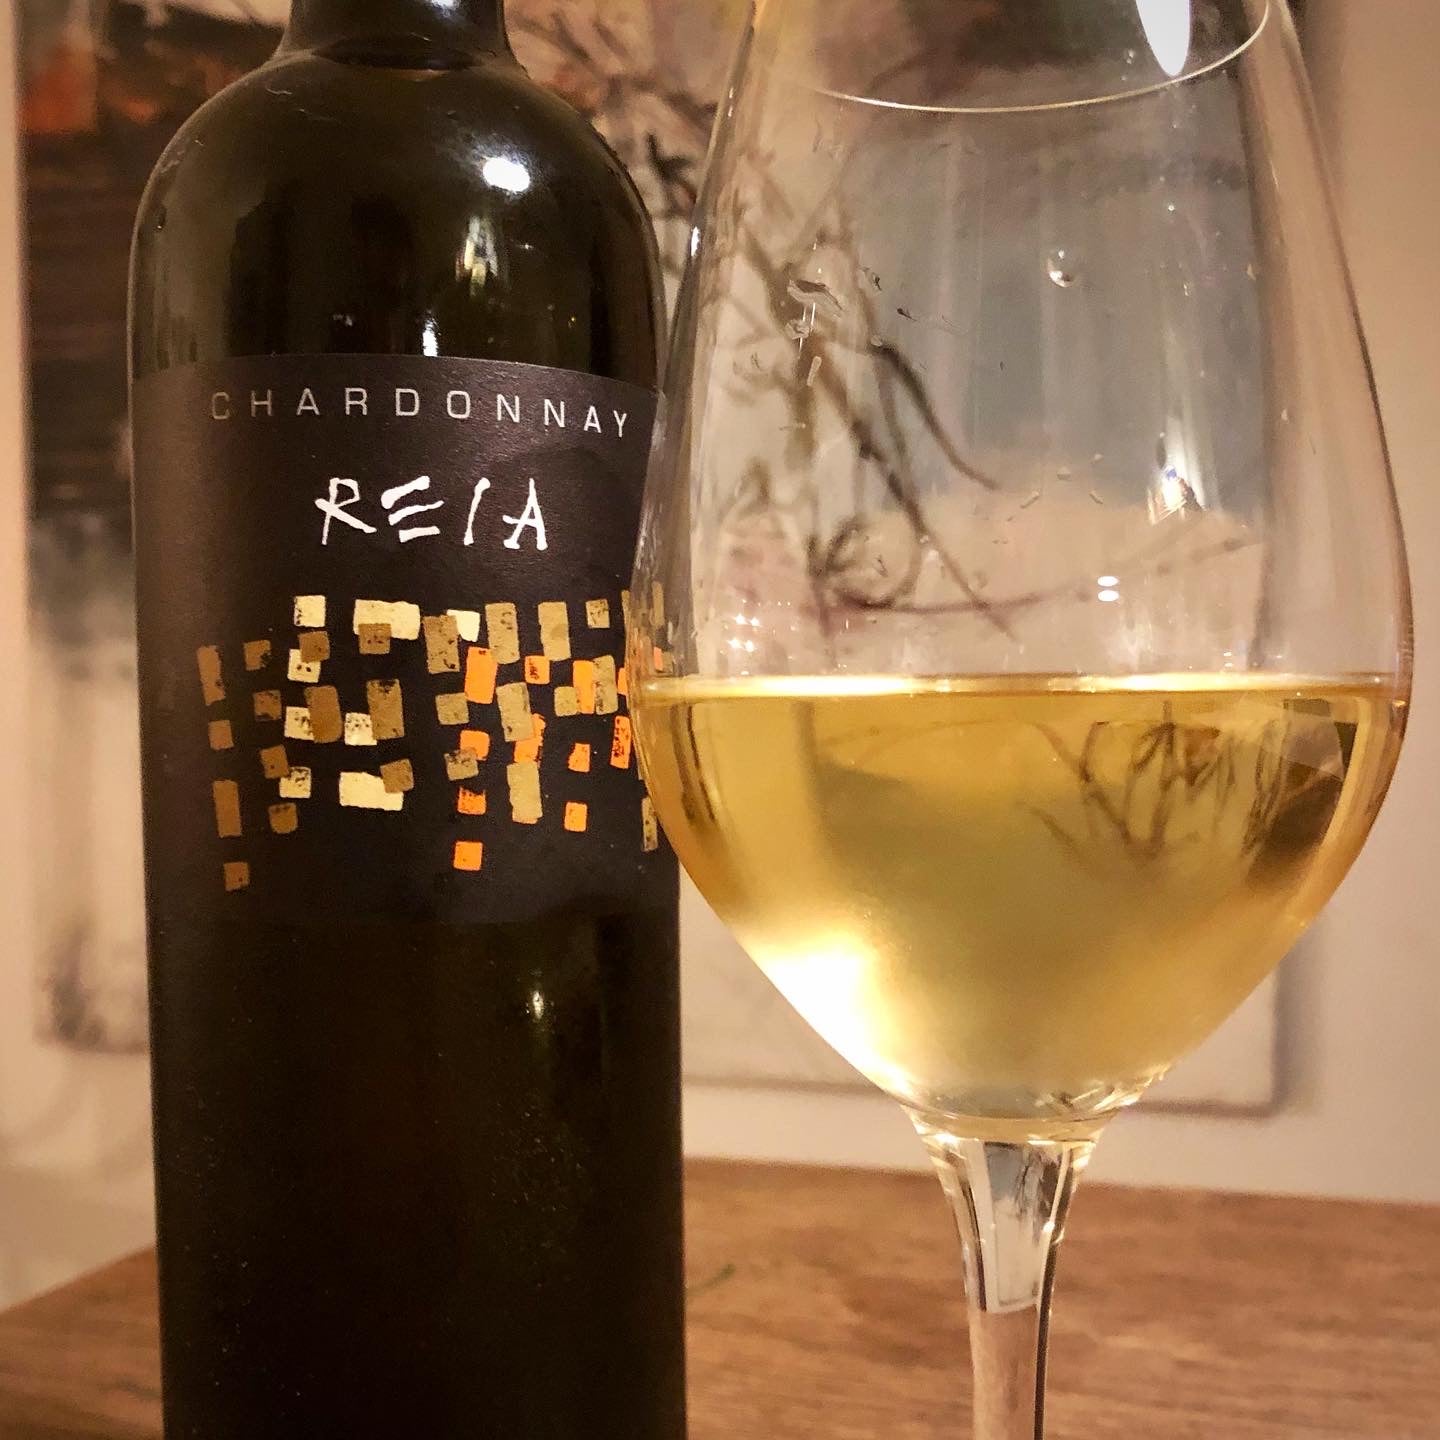 Chardonnay 2017, Reia